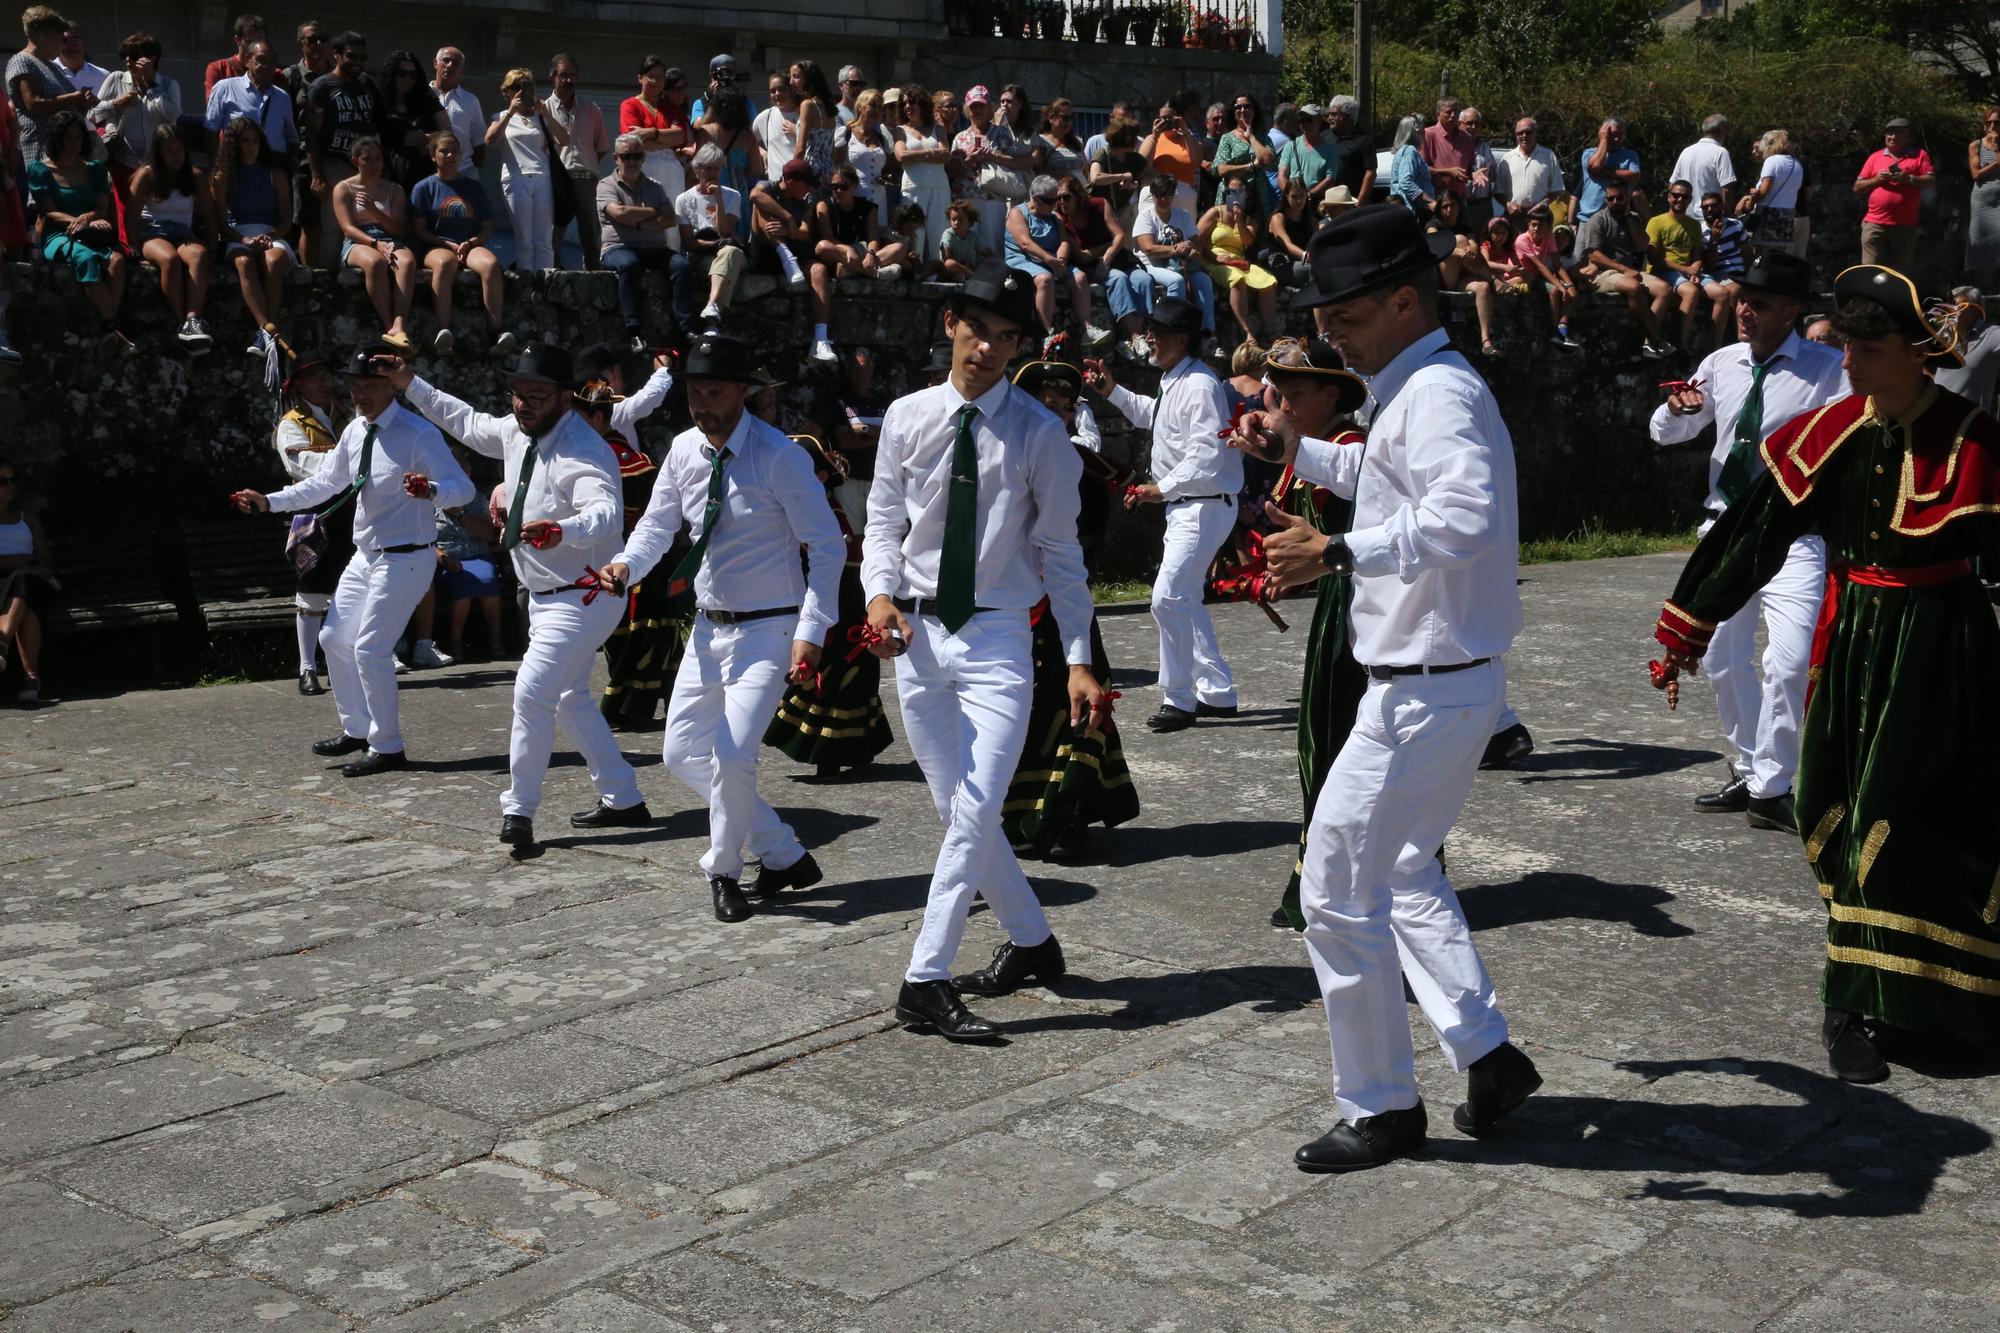 La procesión y la danza de San Roque de O Hío en imágenes (II)